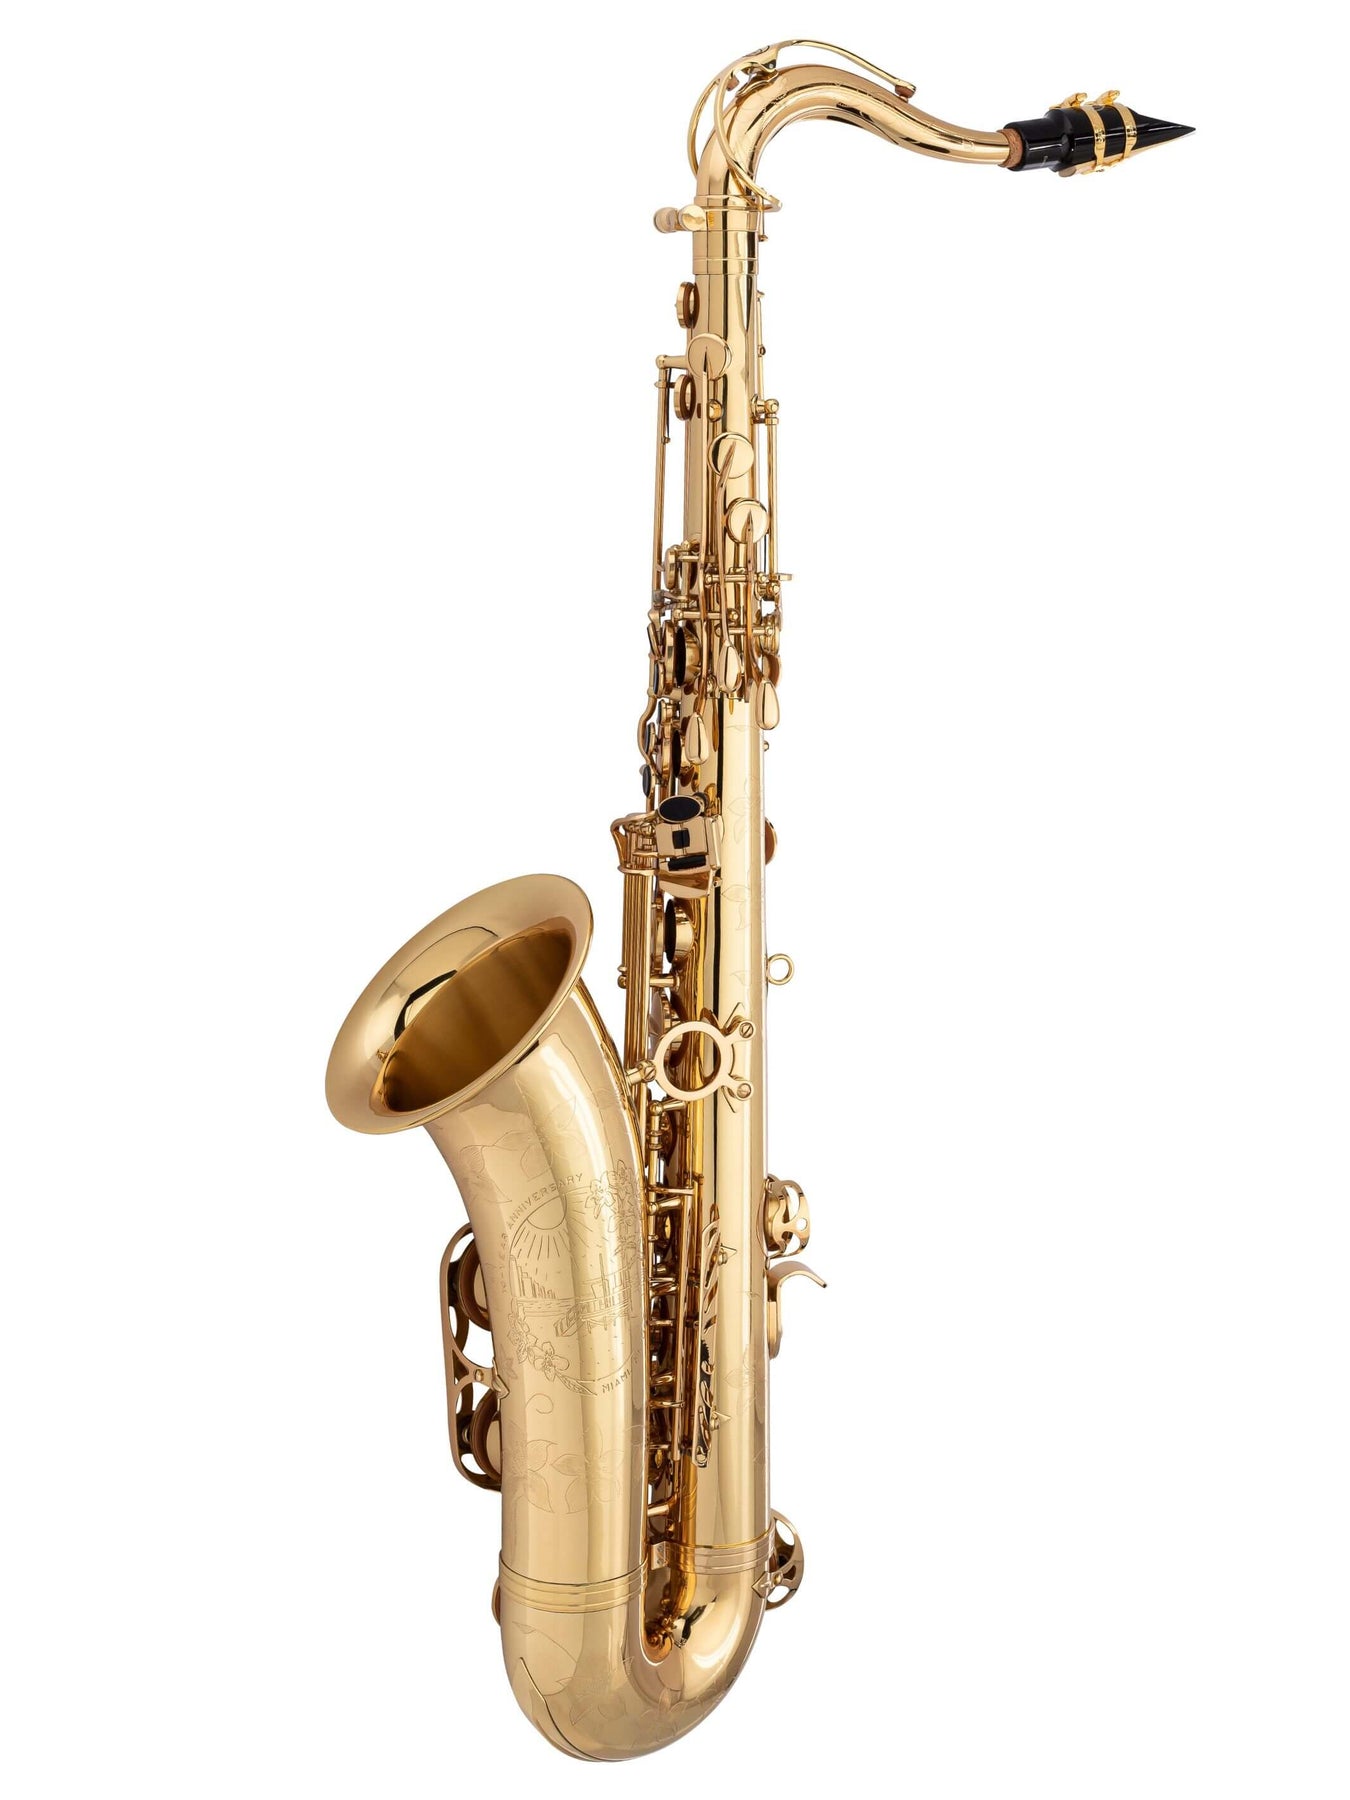 Tour de cou de saxophone pour saxophone alto baryton soprano ténor,  excellent cadeau personnalisé pour joueur de saxophone, tour de cou de  saxophone en cuir fait main -  France